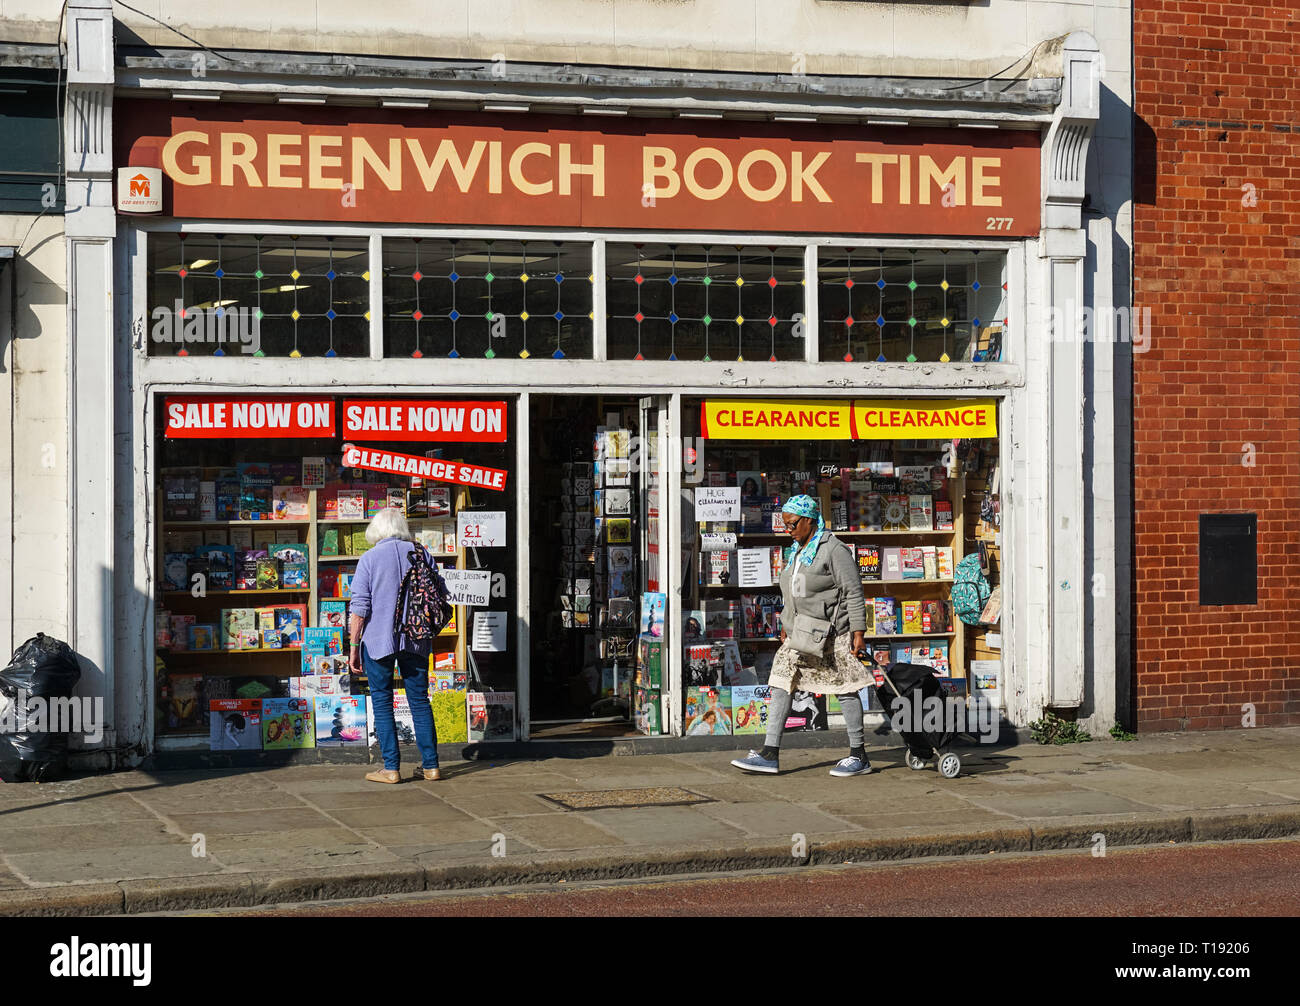 Réserver du temps de Greenwich, librairie à Greenwich, Londres Angleterre Royaume-Uni UK Banque D'Images